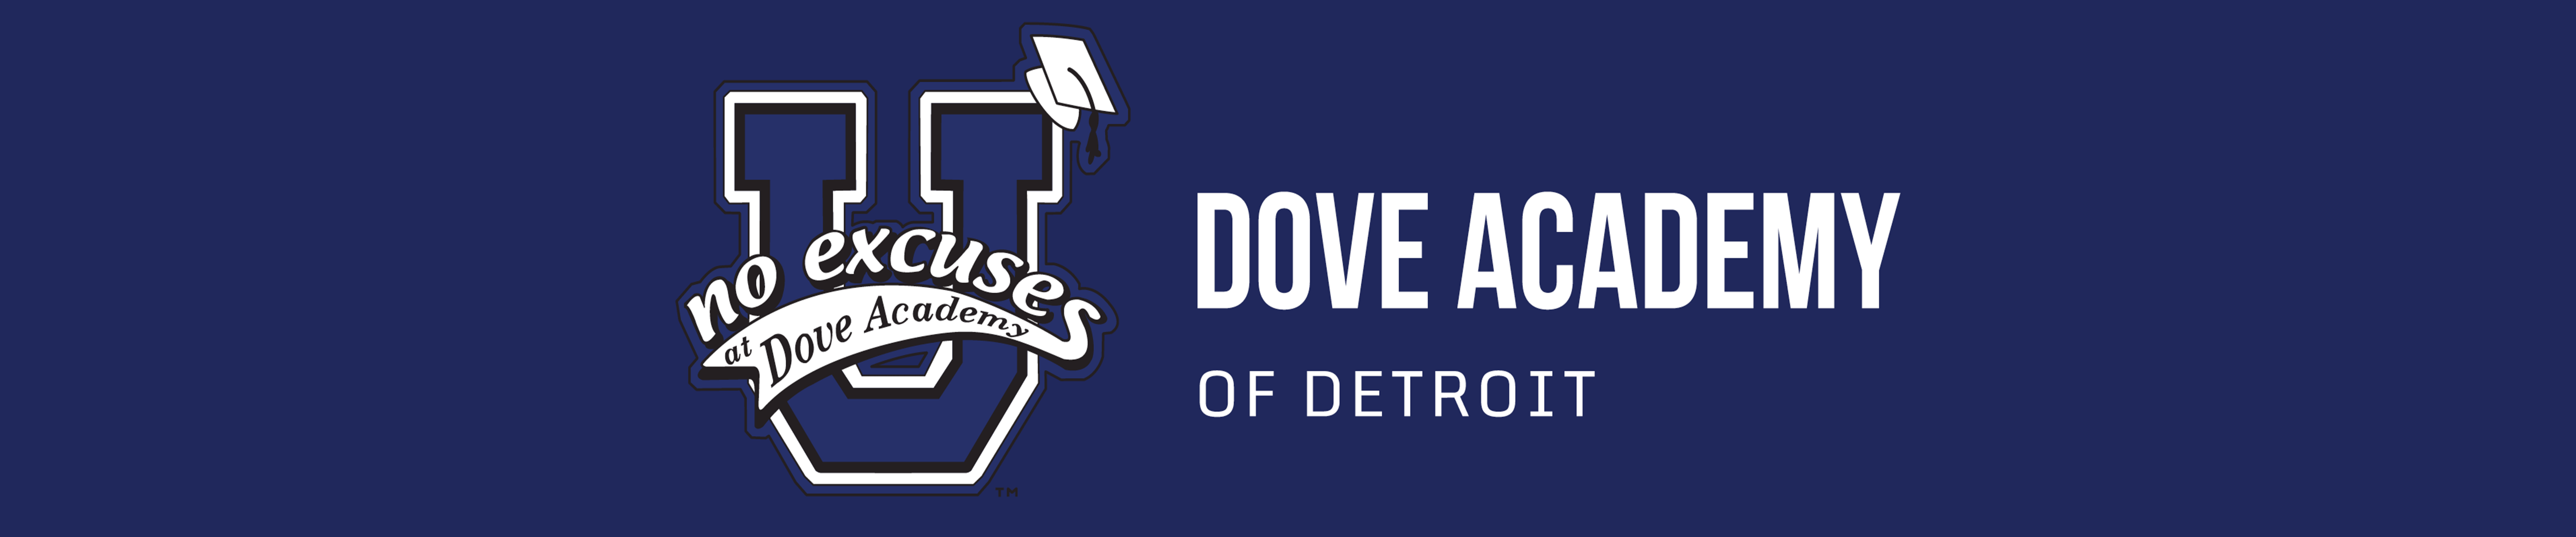 Dove Academy of Detroit